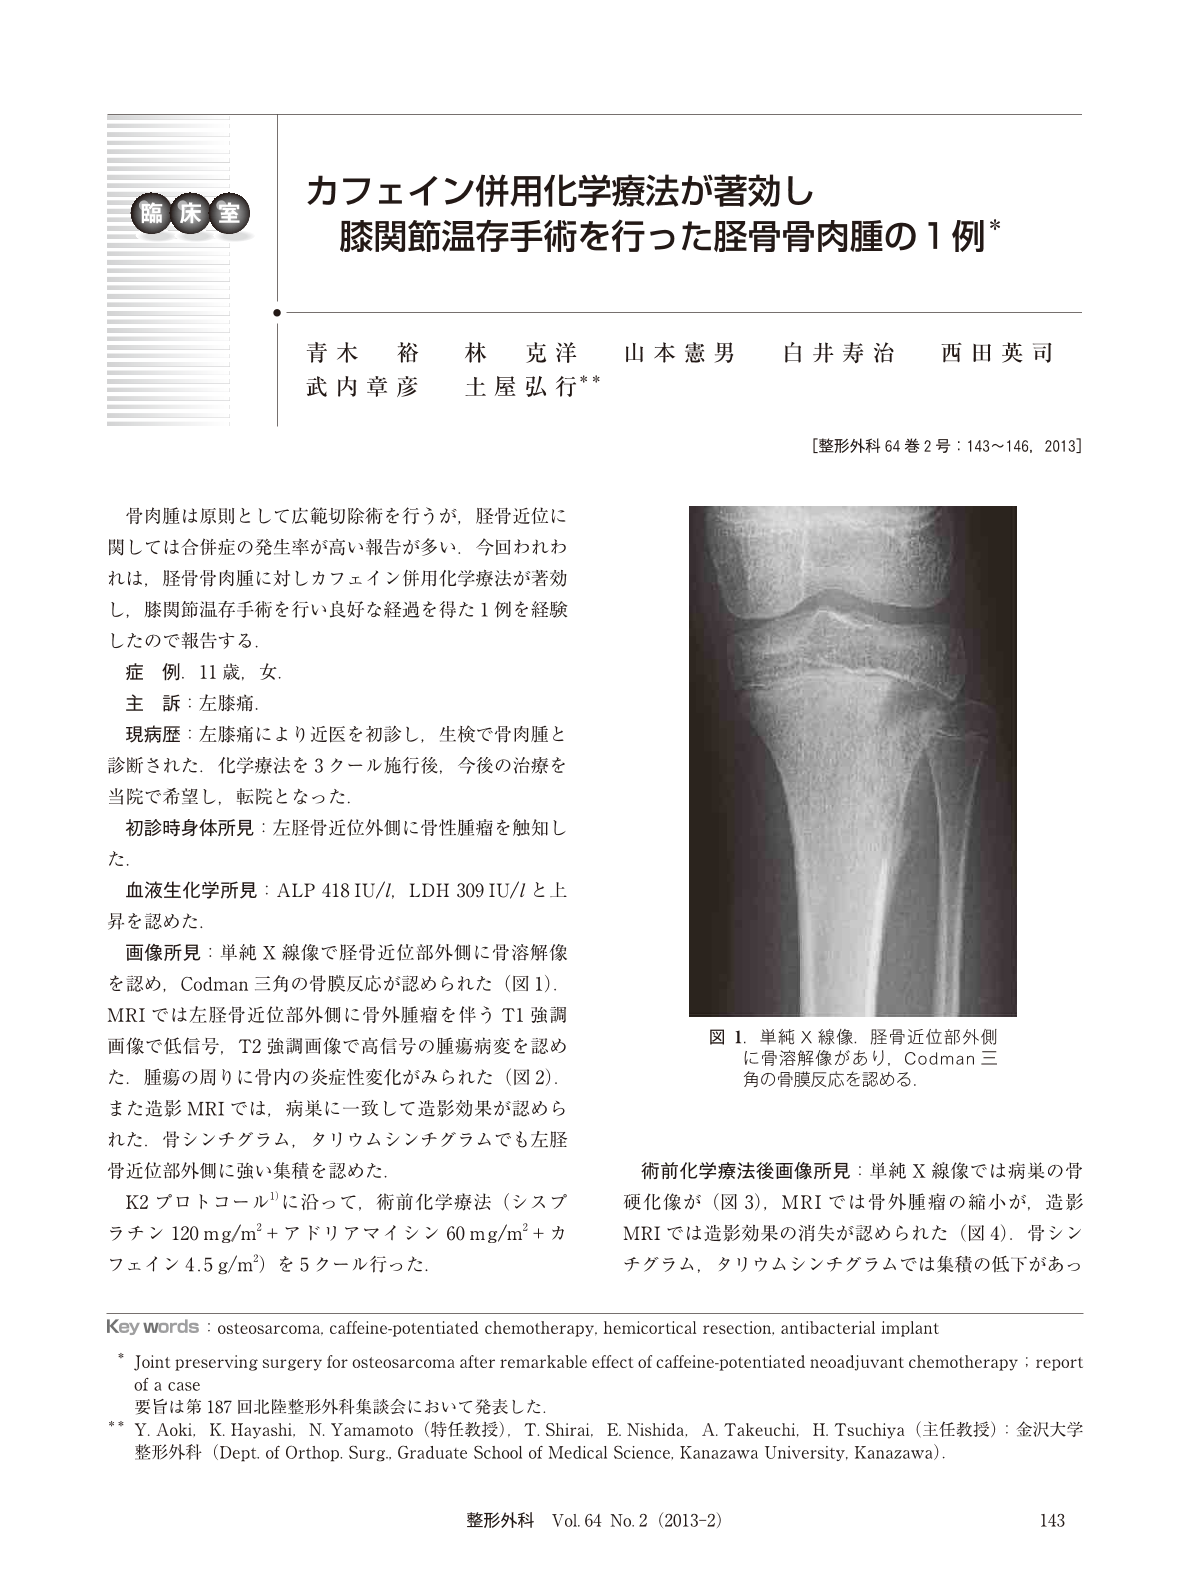 カフェイン併用化学療法が著効し膝関節温存手術を行った脛骨骨肉腫の1例 臨床雑誌整形外科 64巻2号 医書 Jp